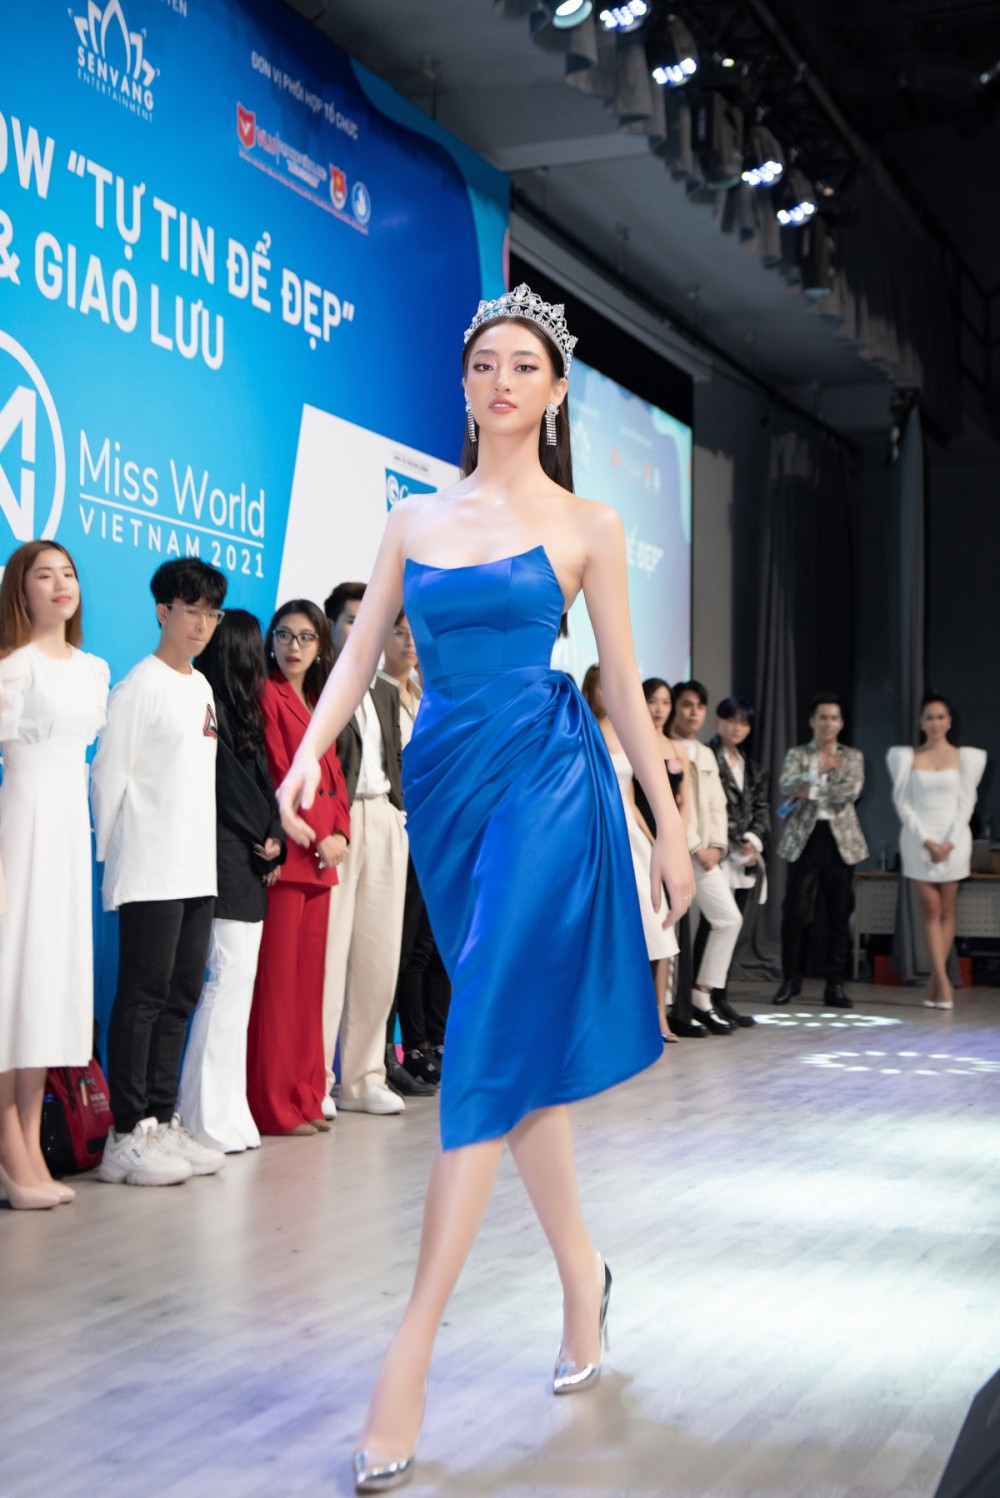 Miss World Vietnam 2021: Hoa hậu Tiểu Vy, Lương Thùy Linh khẳng định đẳng cấp khi thị phạm catwalk